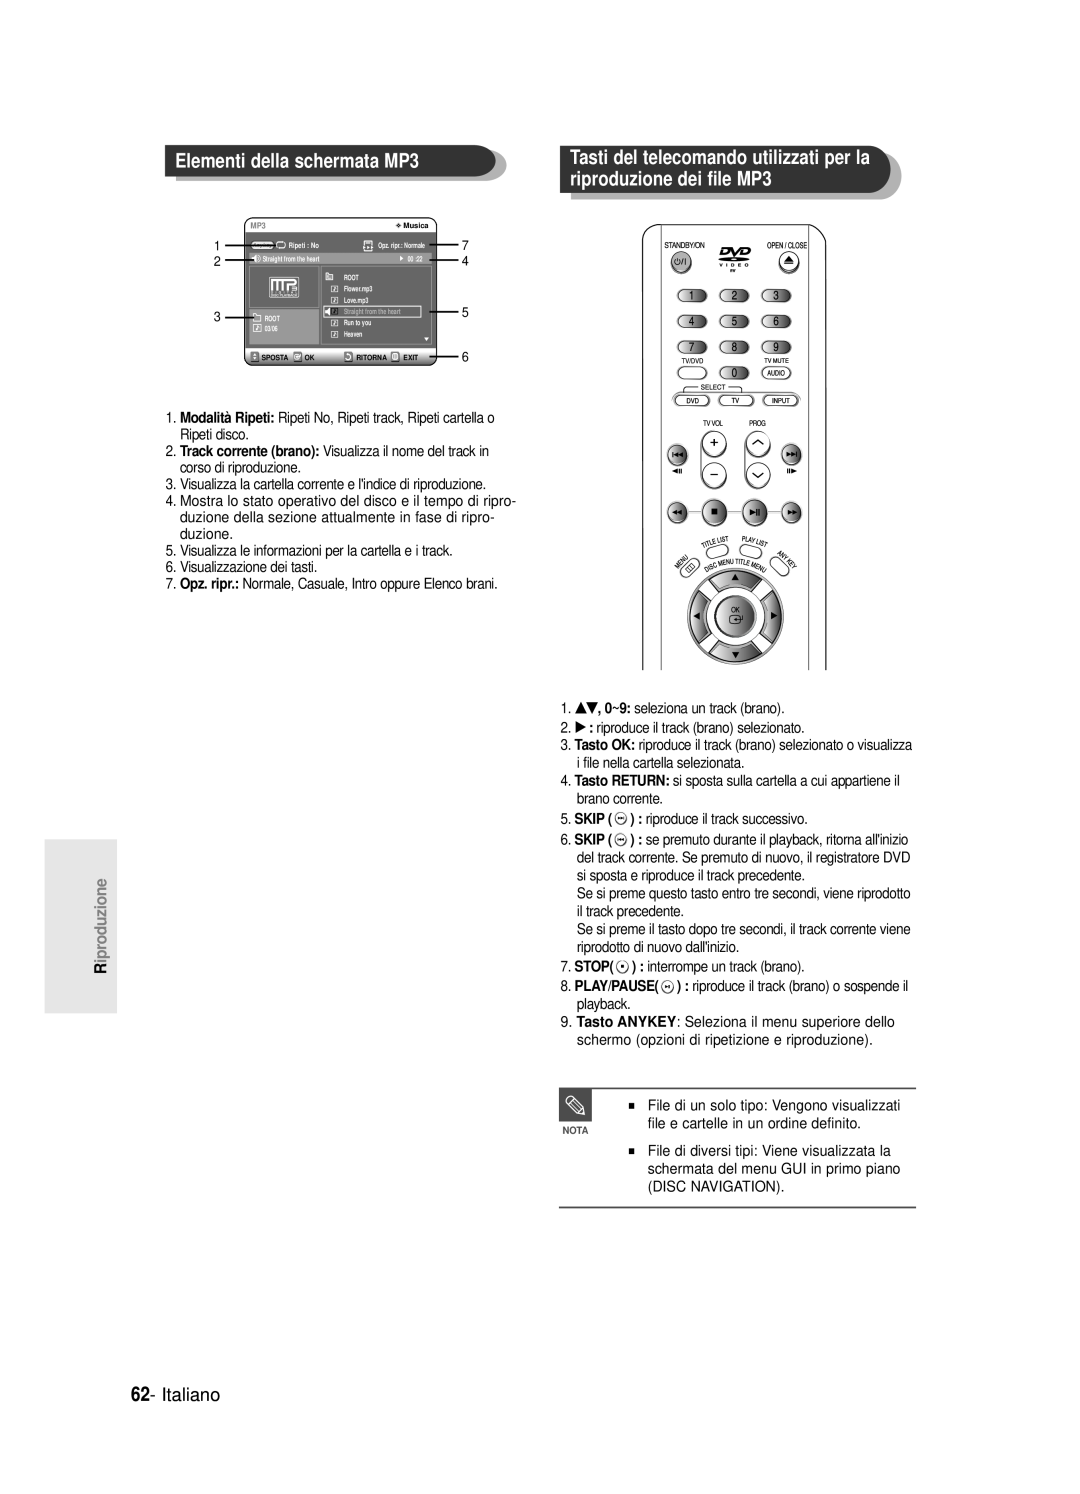 Samsung DVD-R120/XET manual Elementi della schermata MP3, Tasti del telecomando utilizzati per la riproduzione dei file MP3 